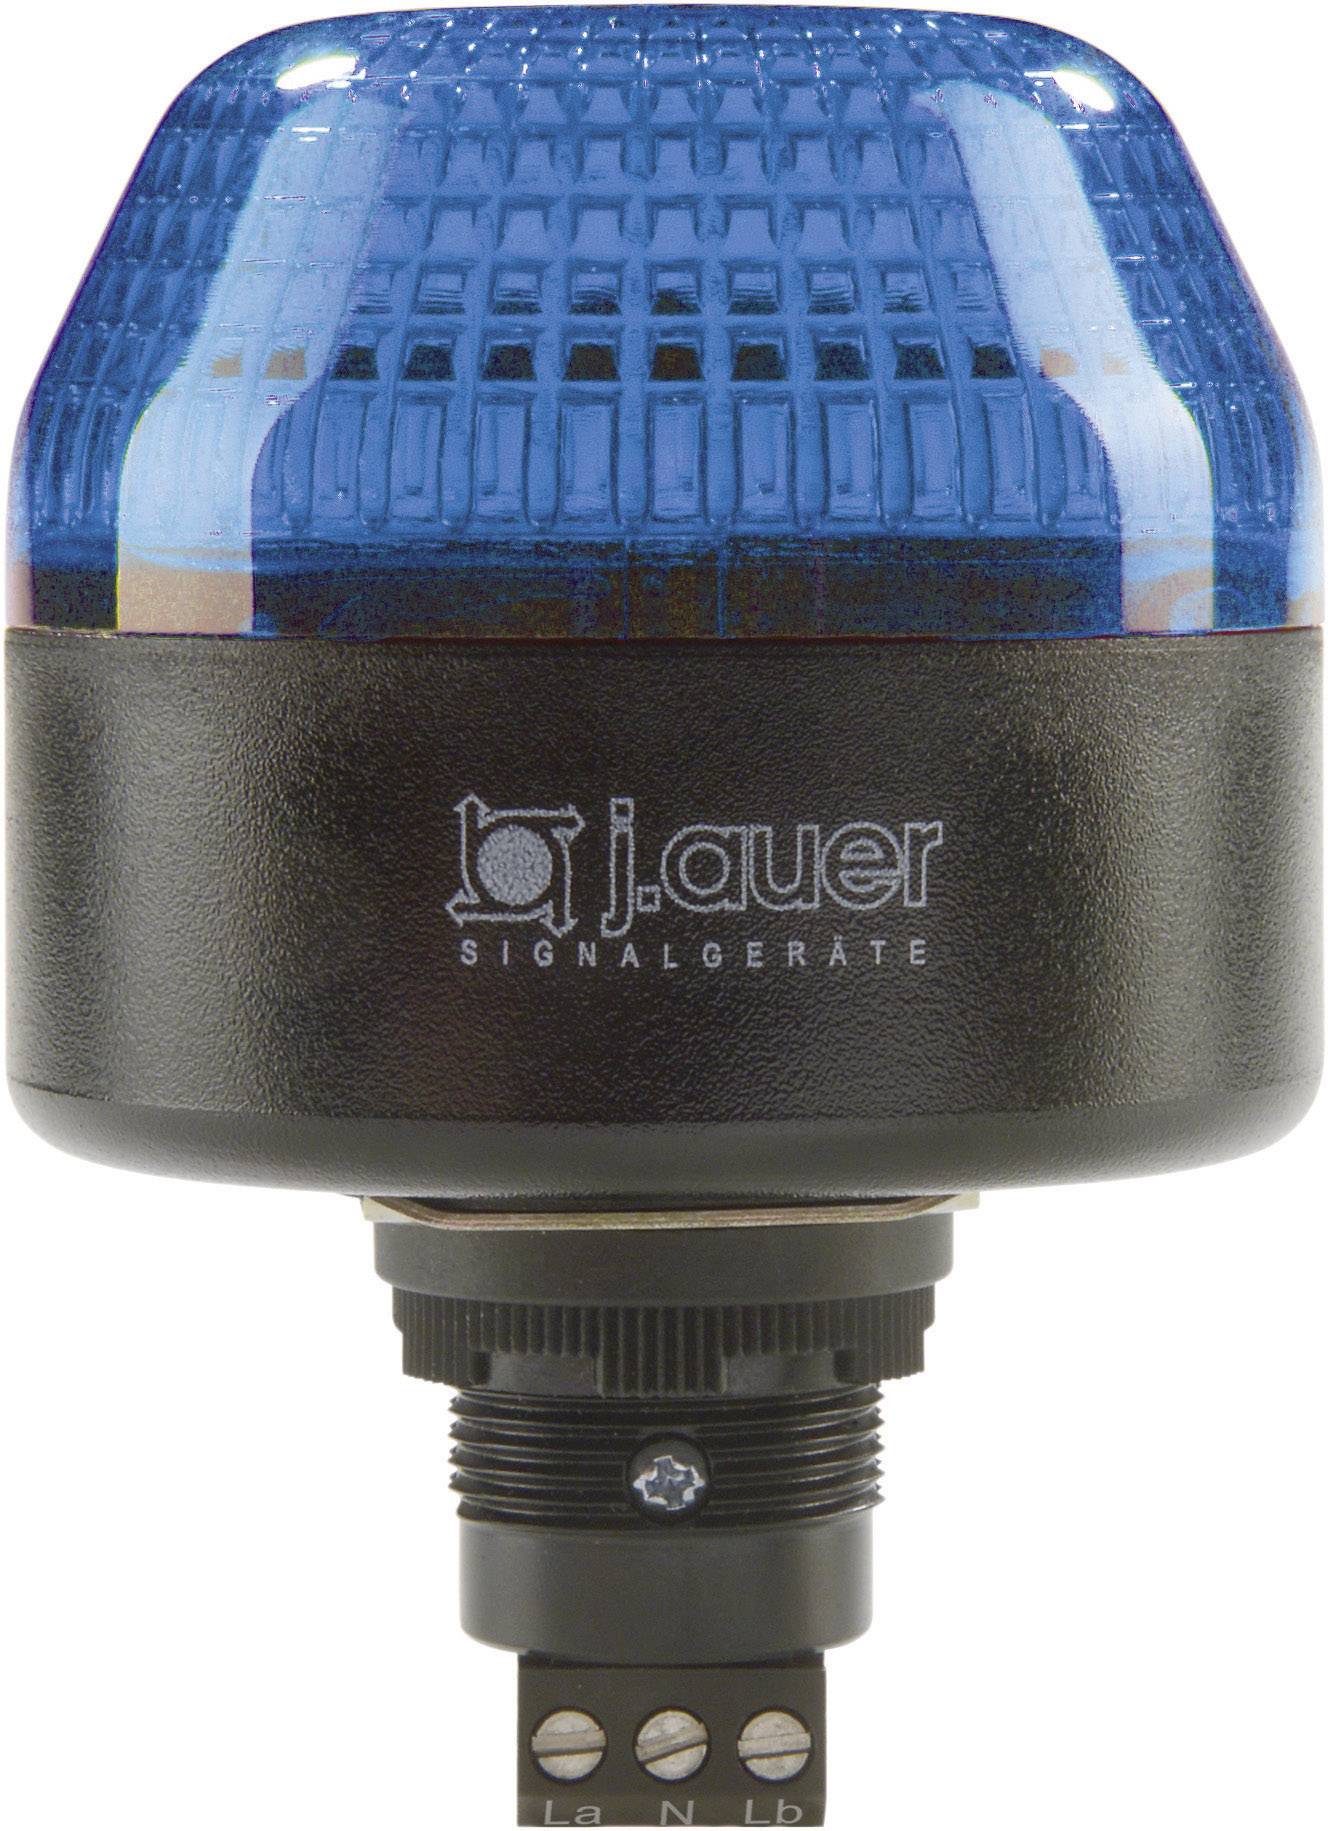 AUER SIGNAL Signalleuchte LED Auer Signalgeräte IBL Blau Dauerlicht, Blinklicht 230 V/AC